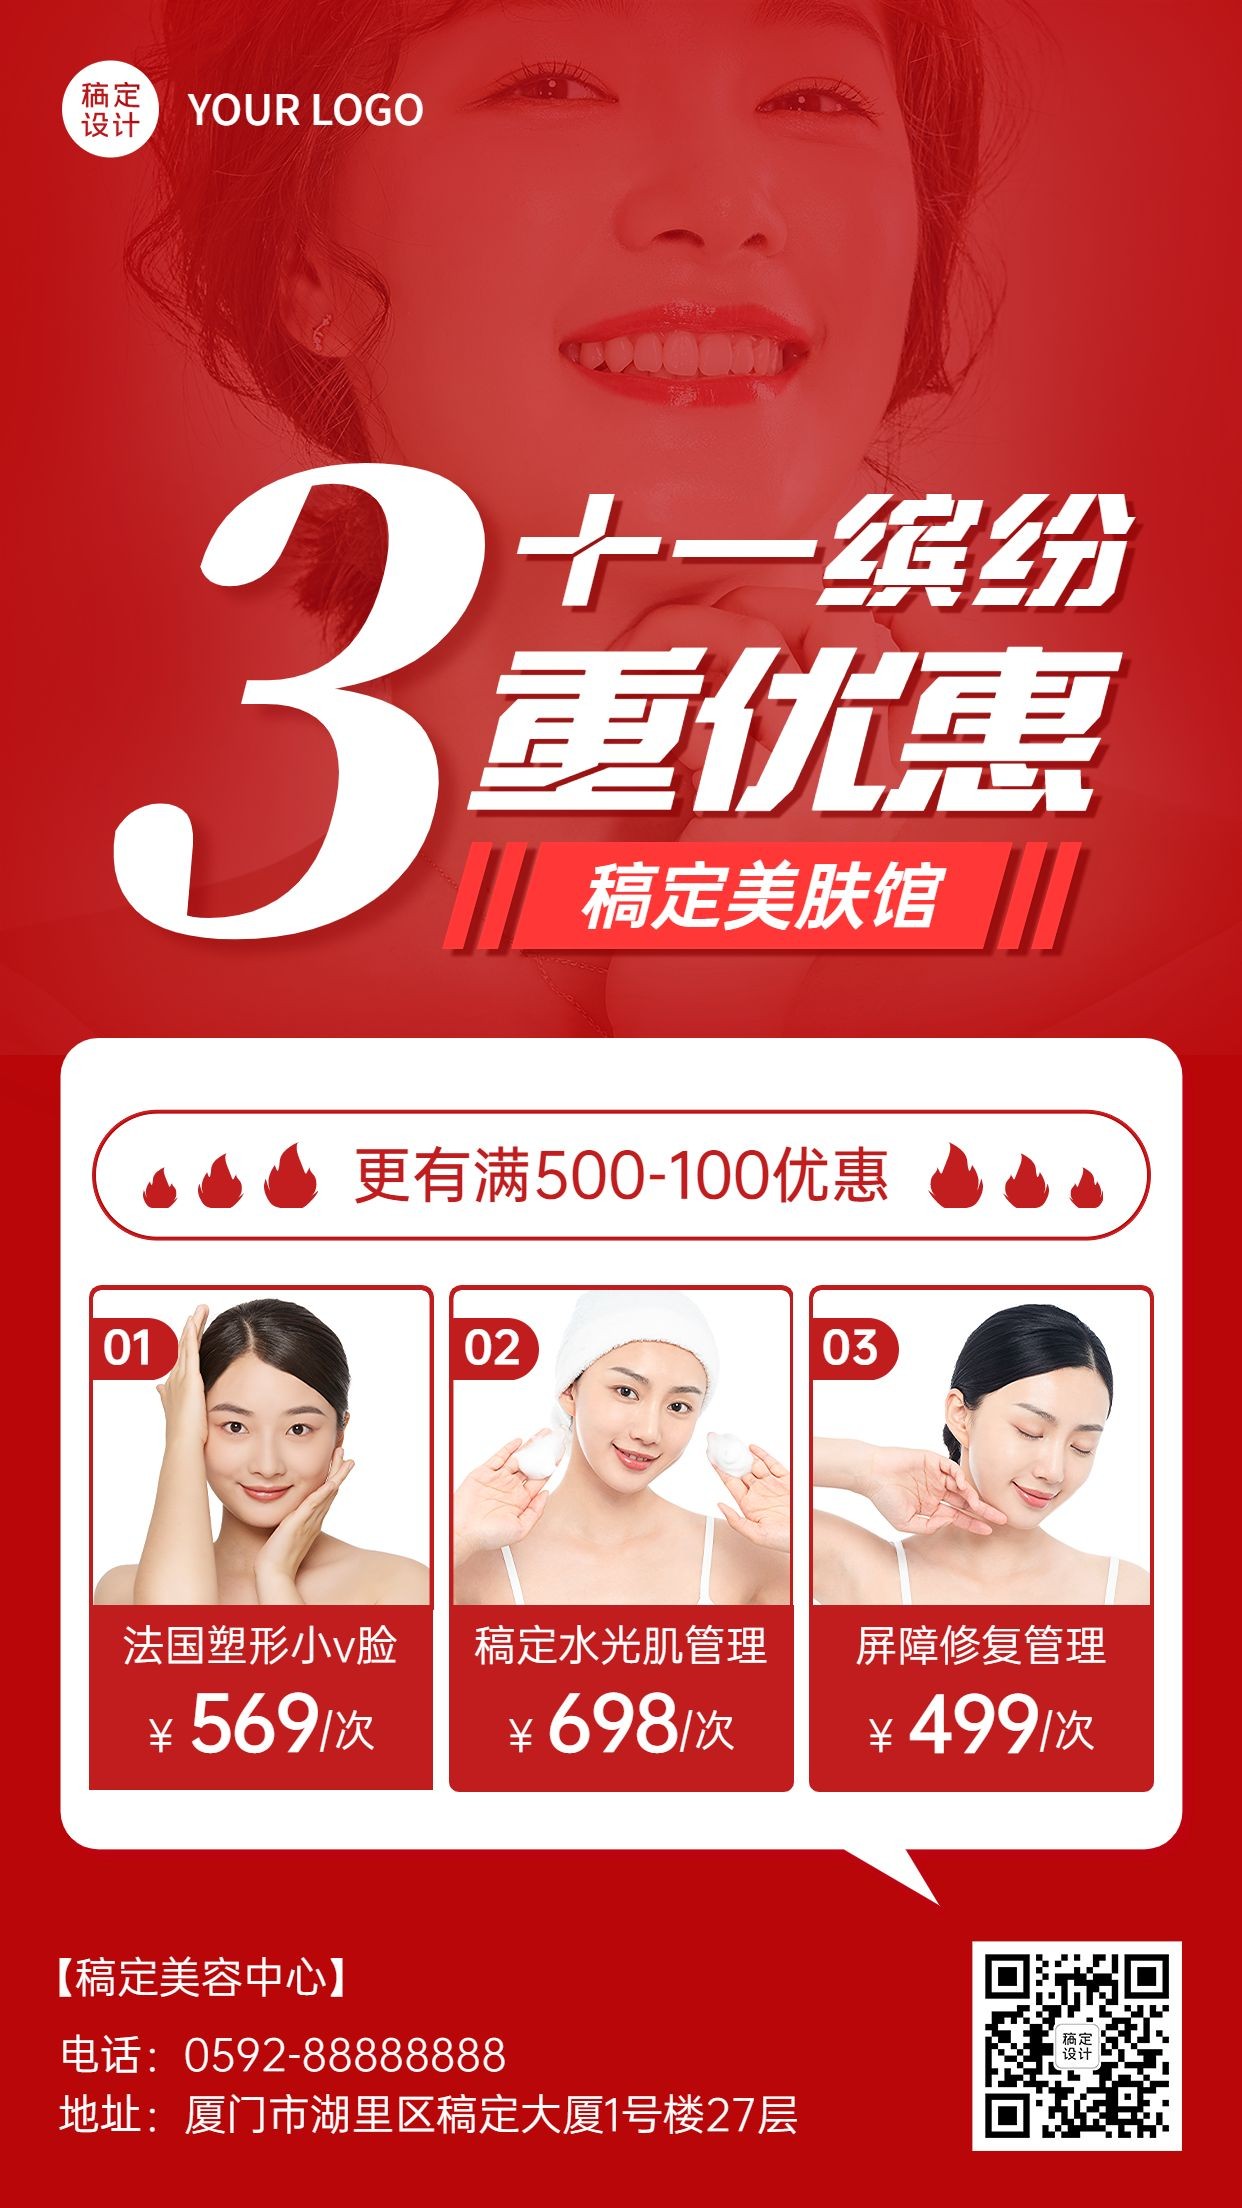 十一国庆美业美容服务优惠活动促销手机海报